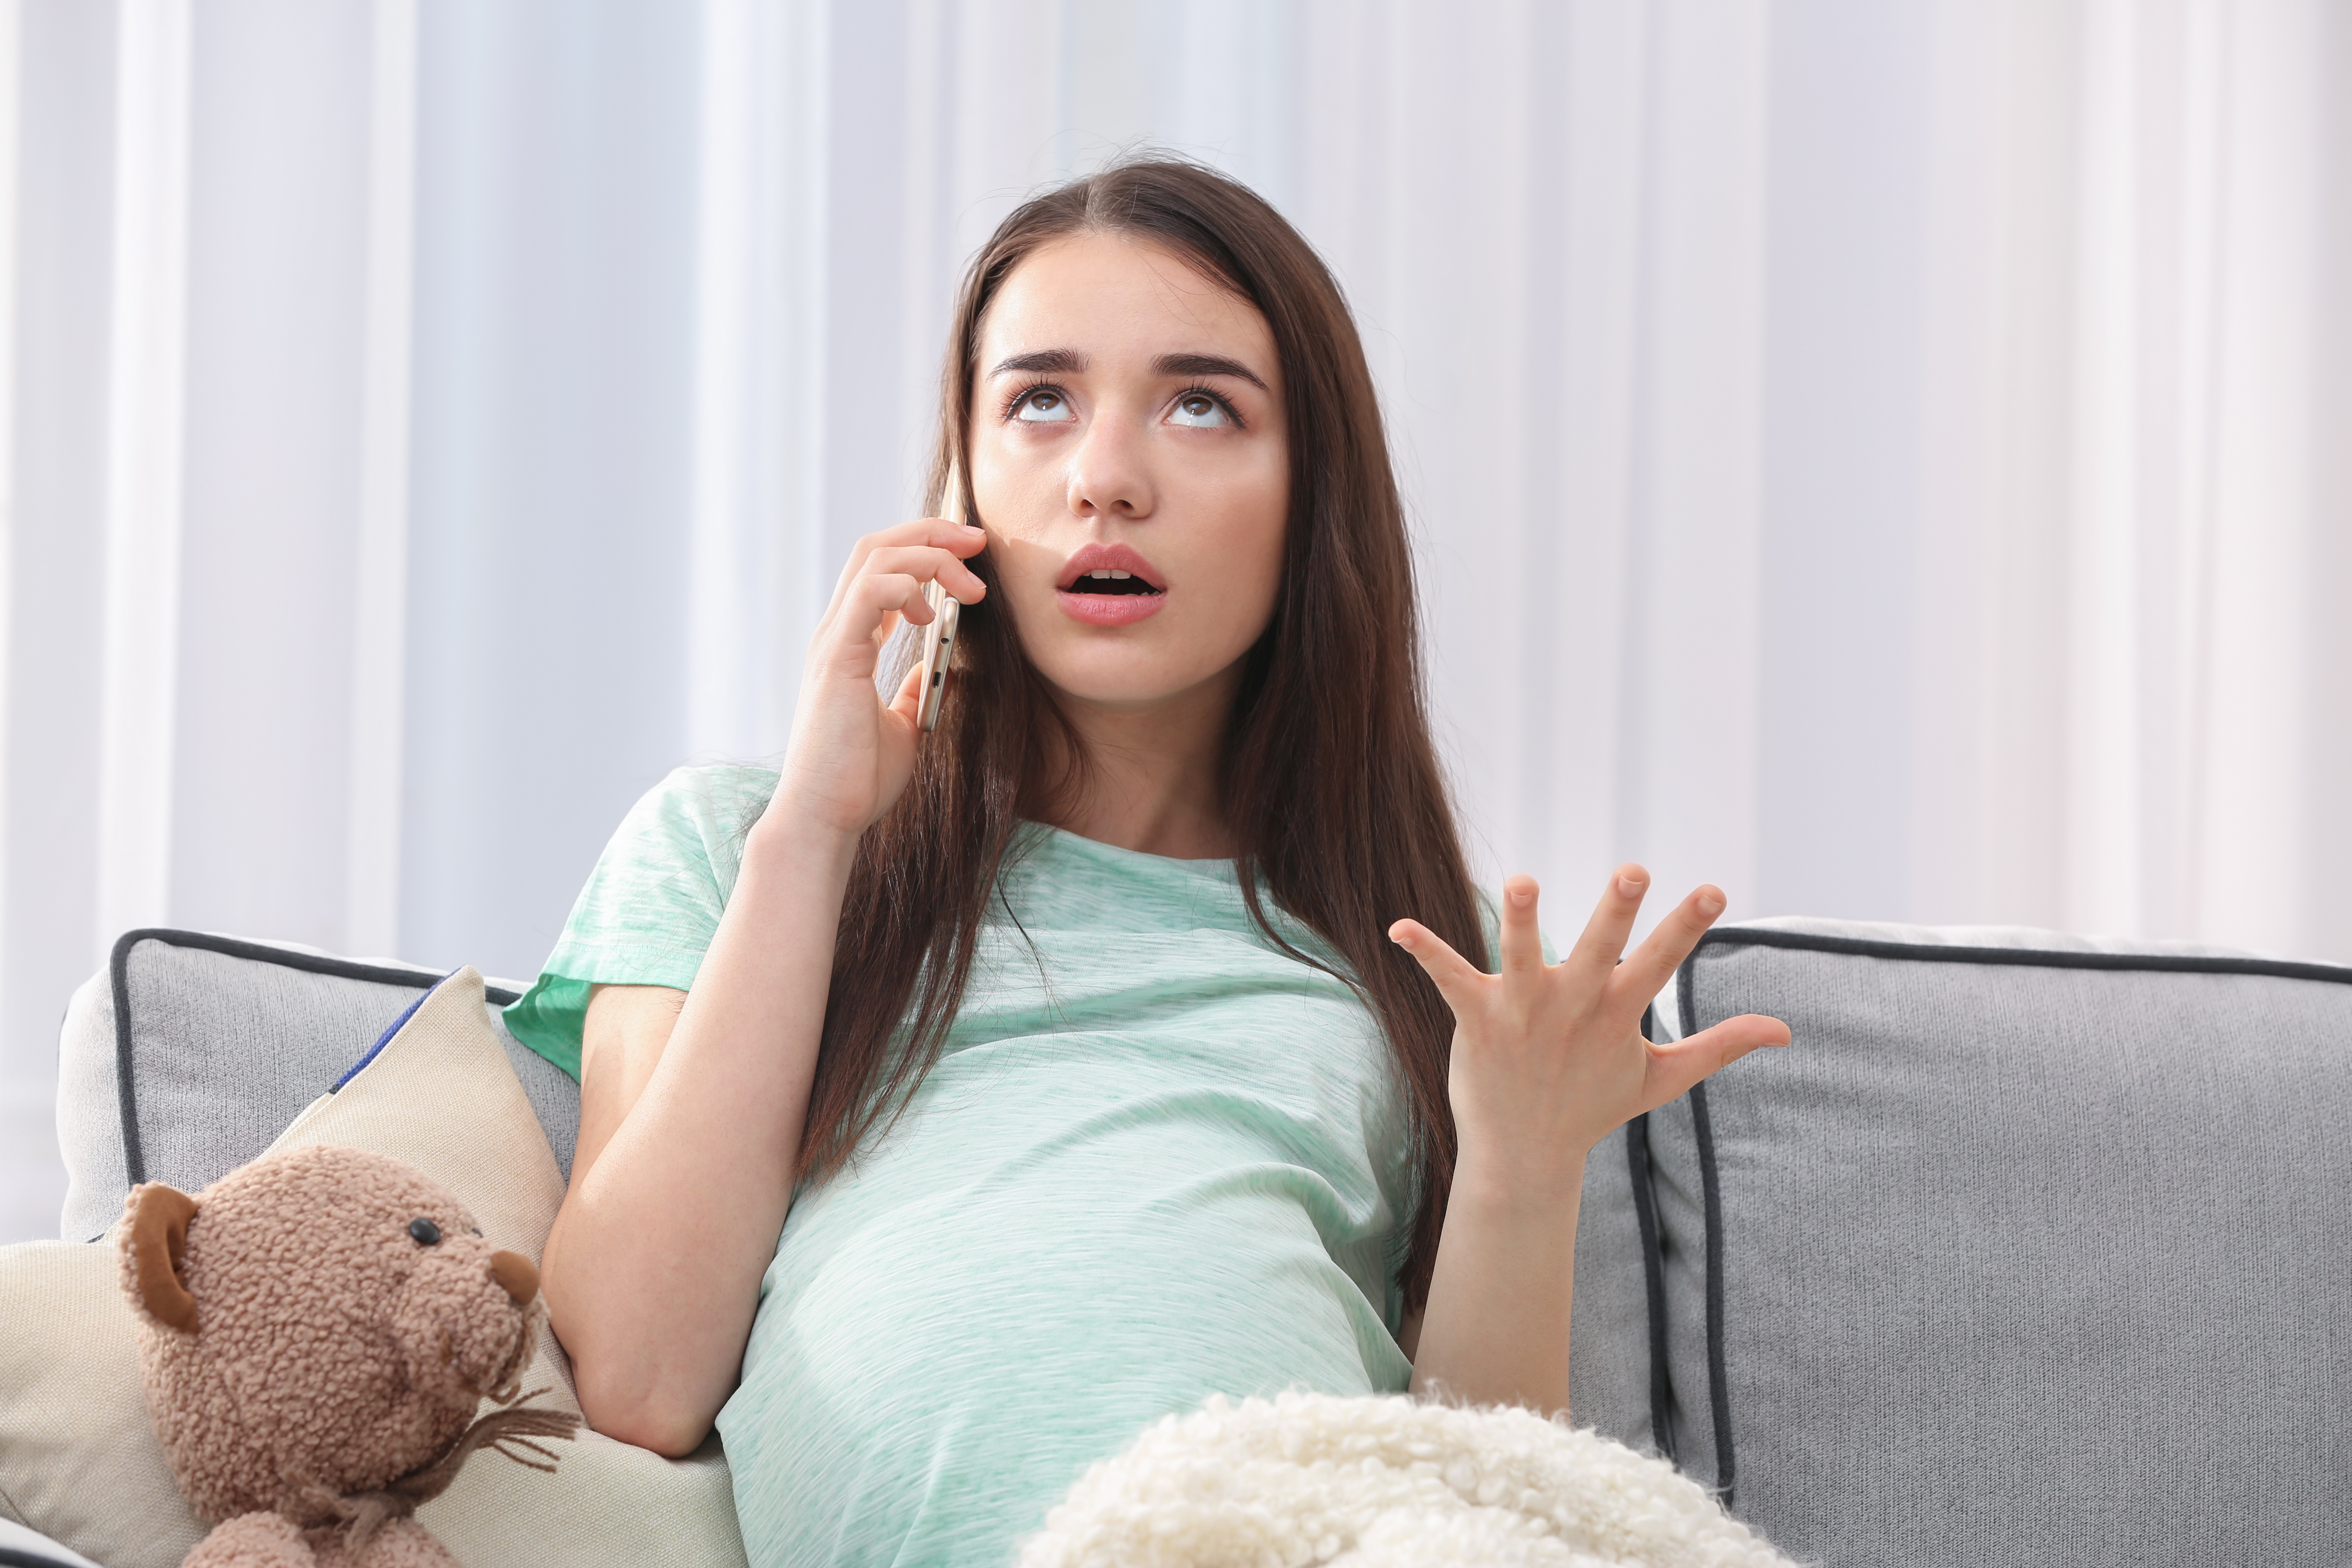 Eine schwangere Frau schaut genervt, während sie telefoniert | Quelle: Shutterstock